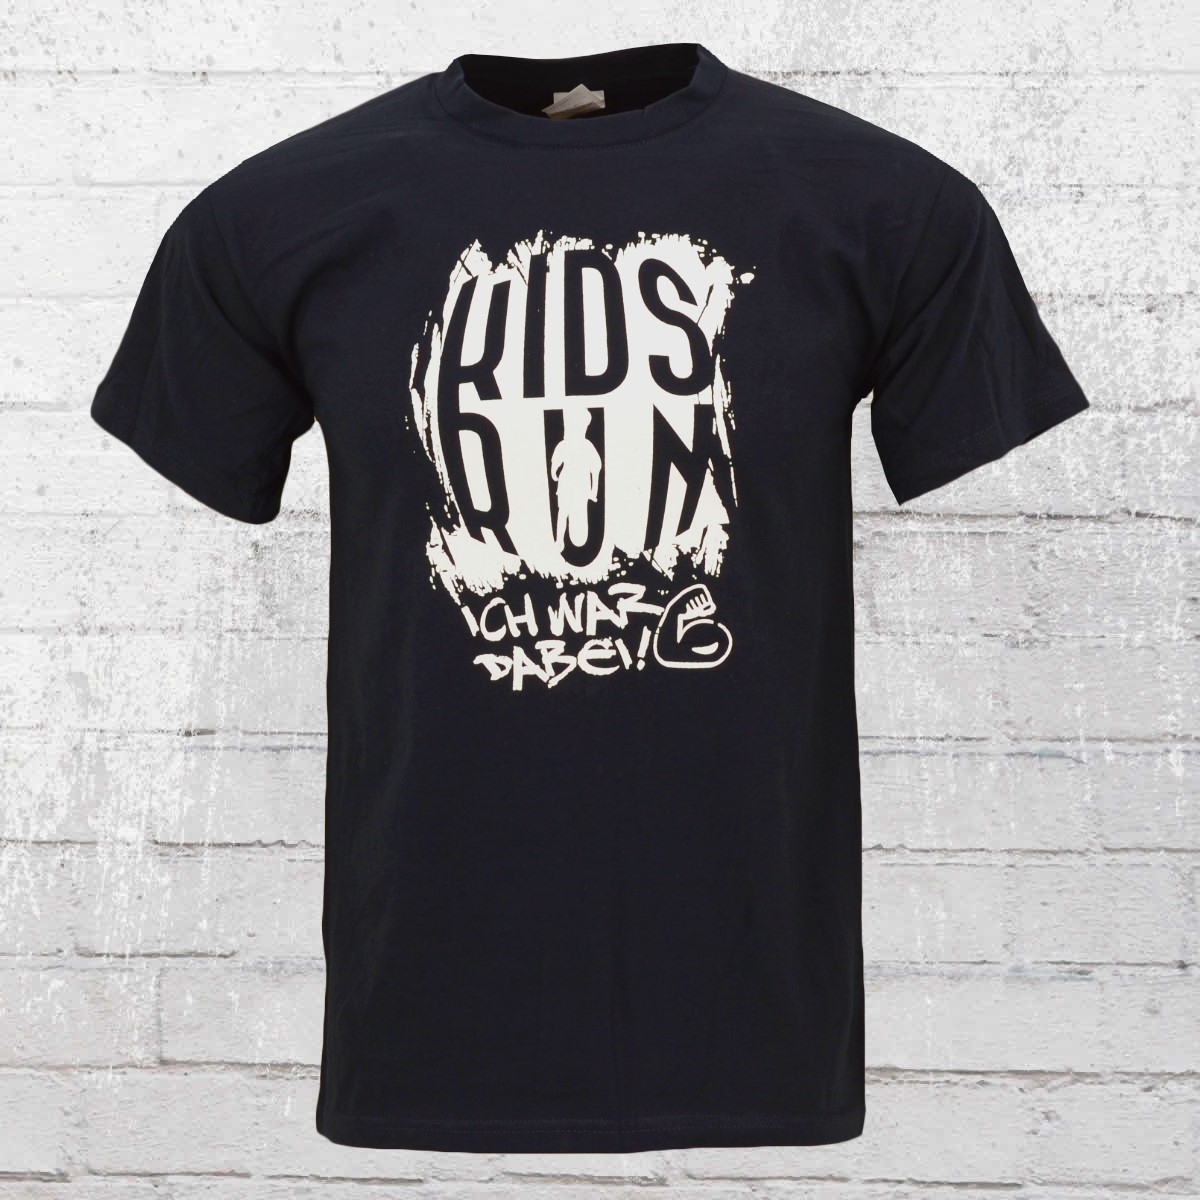 Kidsrun Sonder Edition Männer T-Shirt dunkelblau 